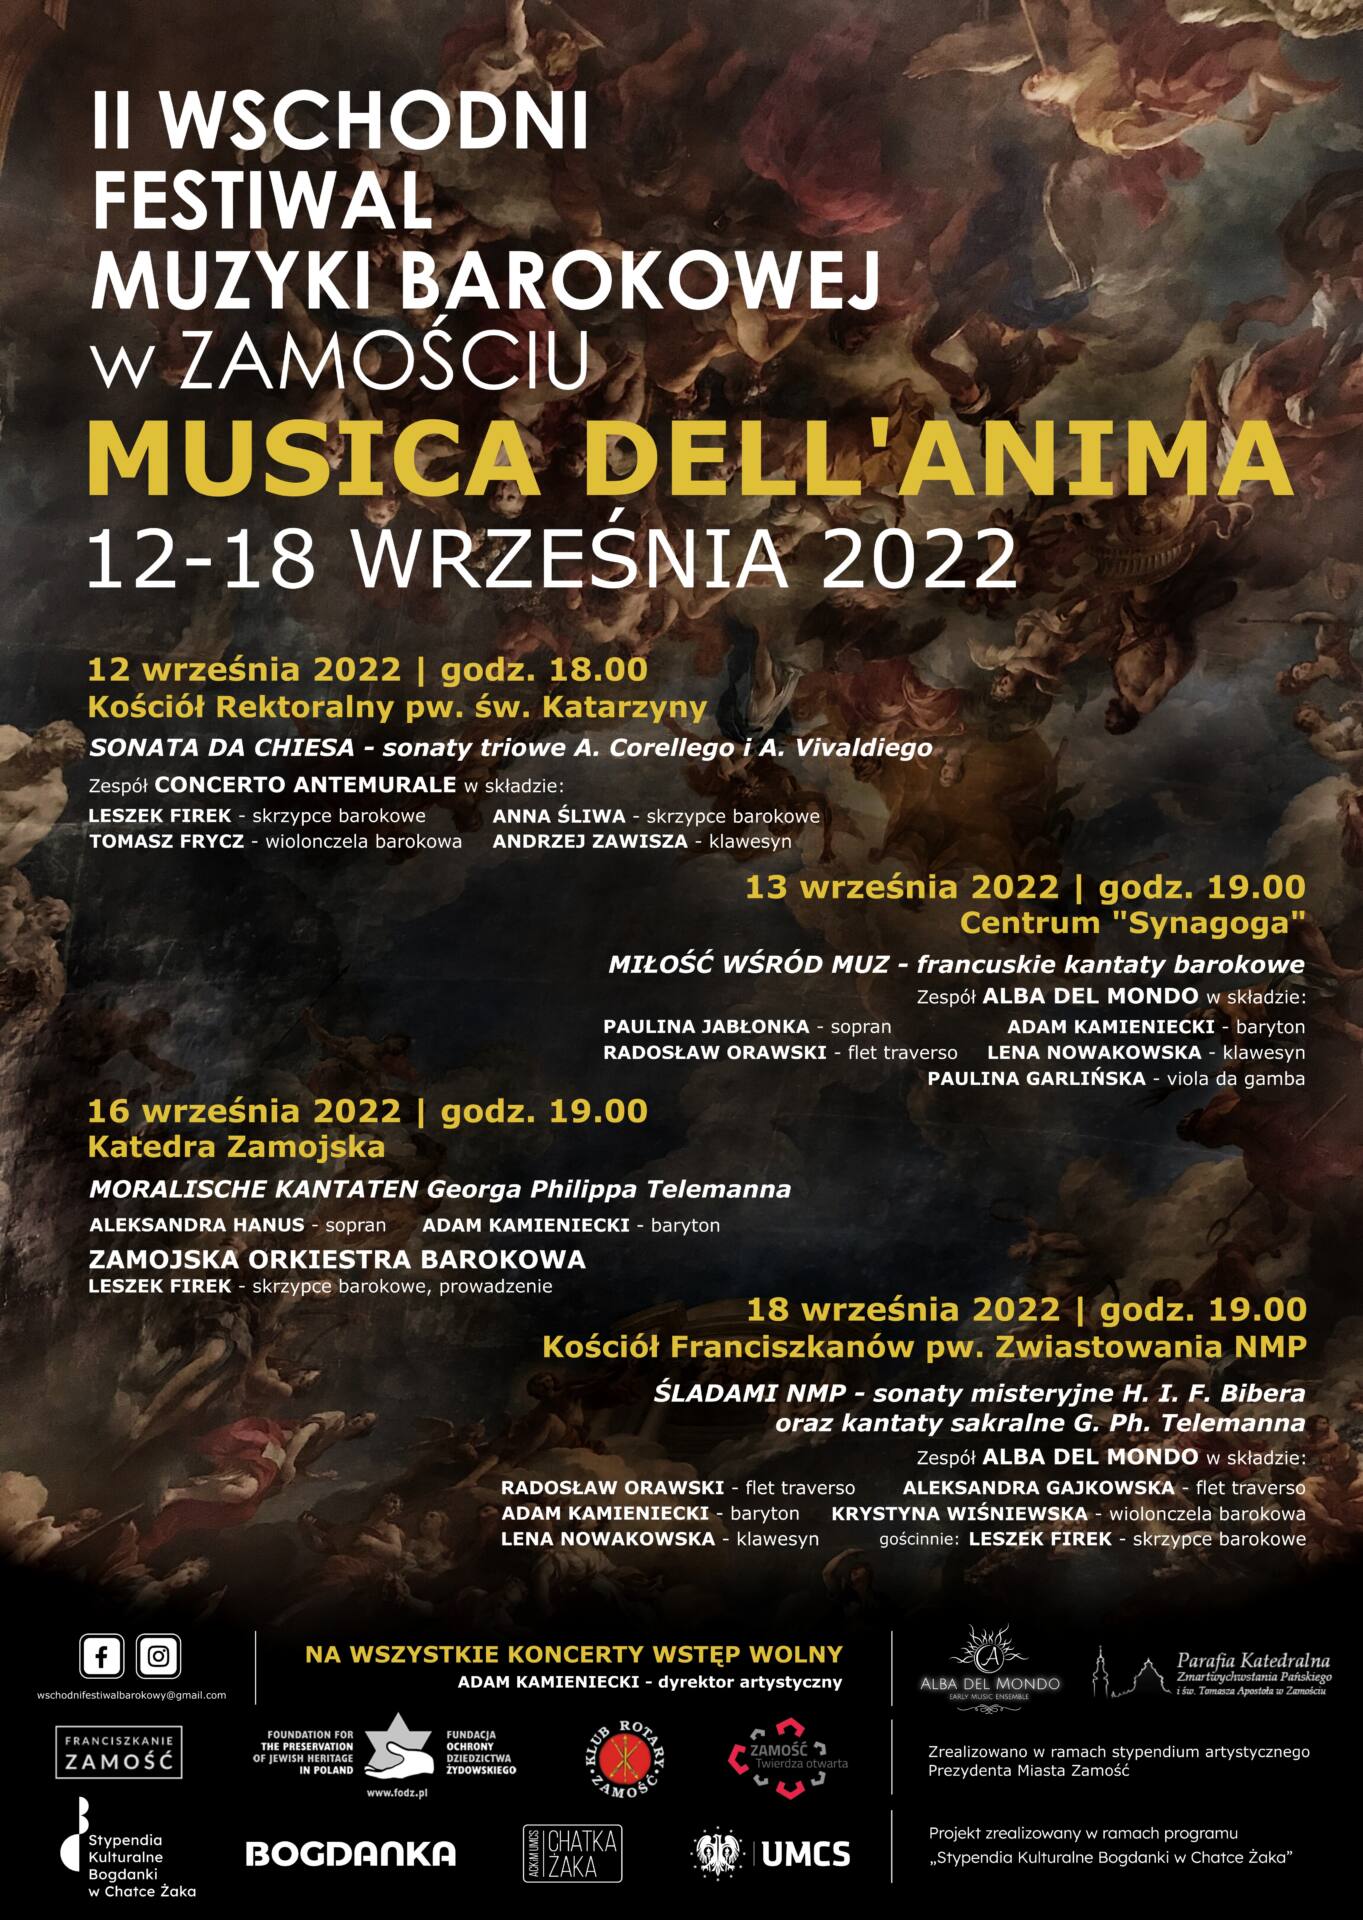 ii wschodni festiwal muzyki barokowej musica dellanima w zamosciu plakat online Wyjątkowe muzyczne wydarzenie w Zamościu! Festiwal Muzyki Barokowej